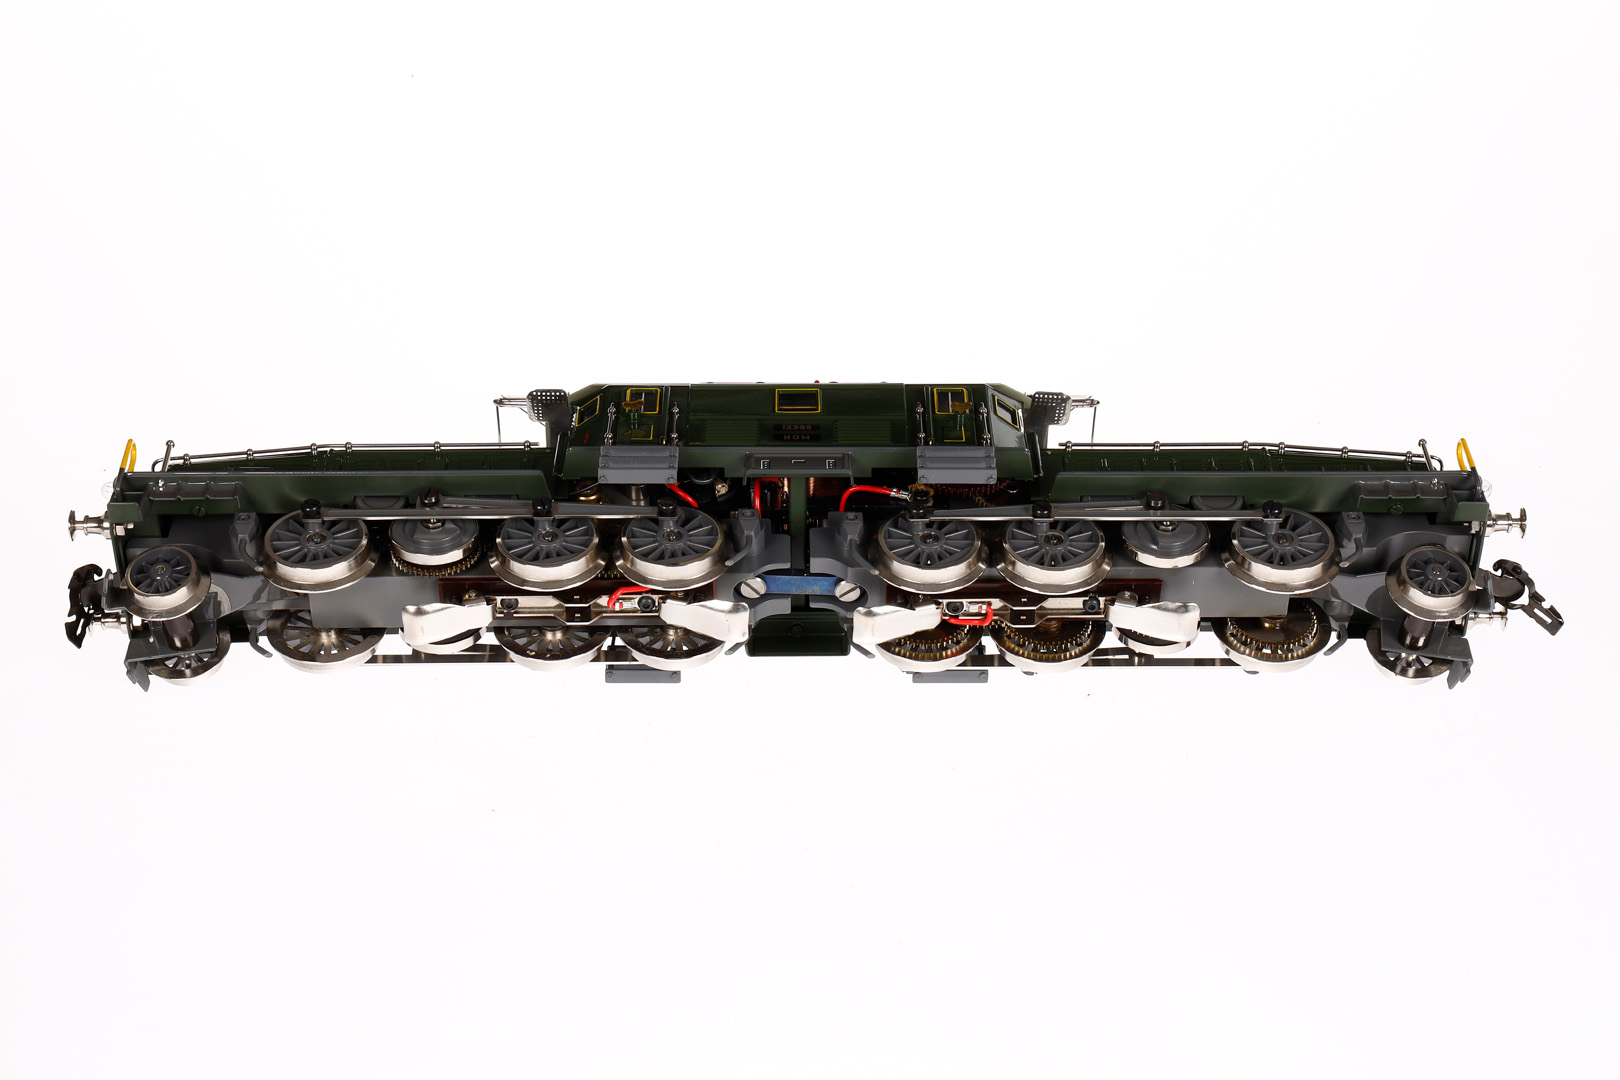 Mundhenke Krokodil 13305, Spur 0, elektr., 2-motorig, 3-Leiter, HL, mit je 3 el. bel. Stirnlampen, - Image 4 of 6